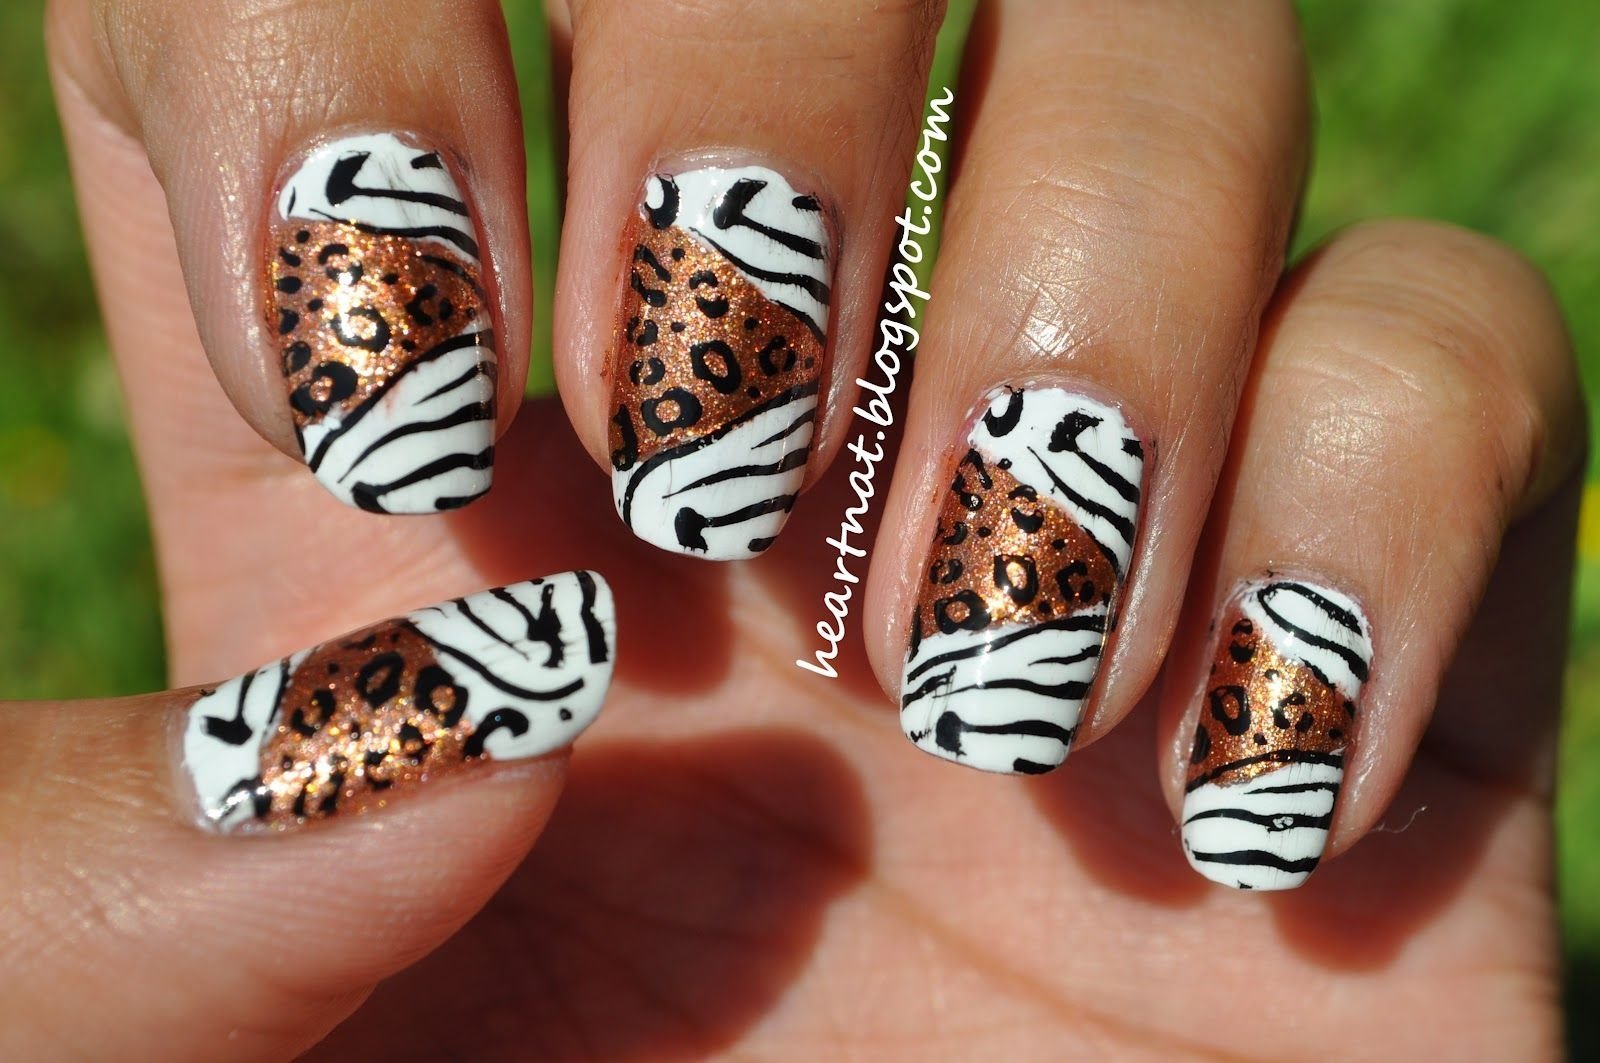 Тигровые ногти дизайн. Тигровые ногти. Дизайн ногтей тигровый. Тигр на ногтях. Принт тигра на ногтях.